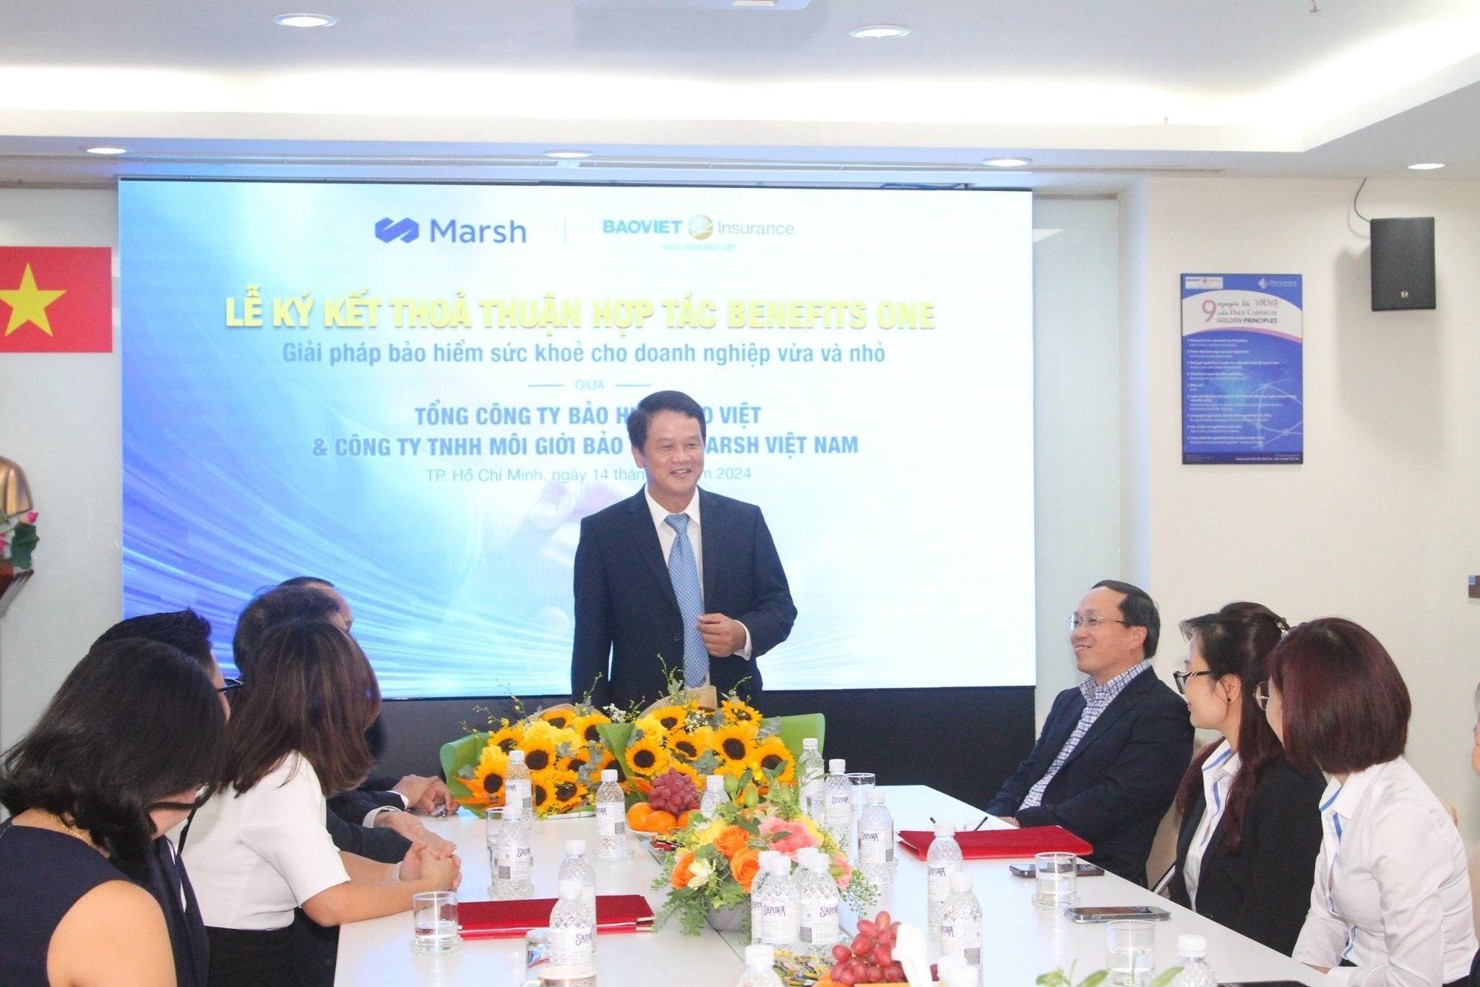 Bảo hiểm Bảo Việt và Marsh Việt Nam ký kết thỏa thuận bảo hiểm cho doanh nghiệp vừa và nhỏ  - Ảnh 1